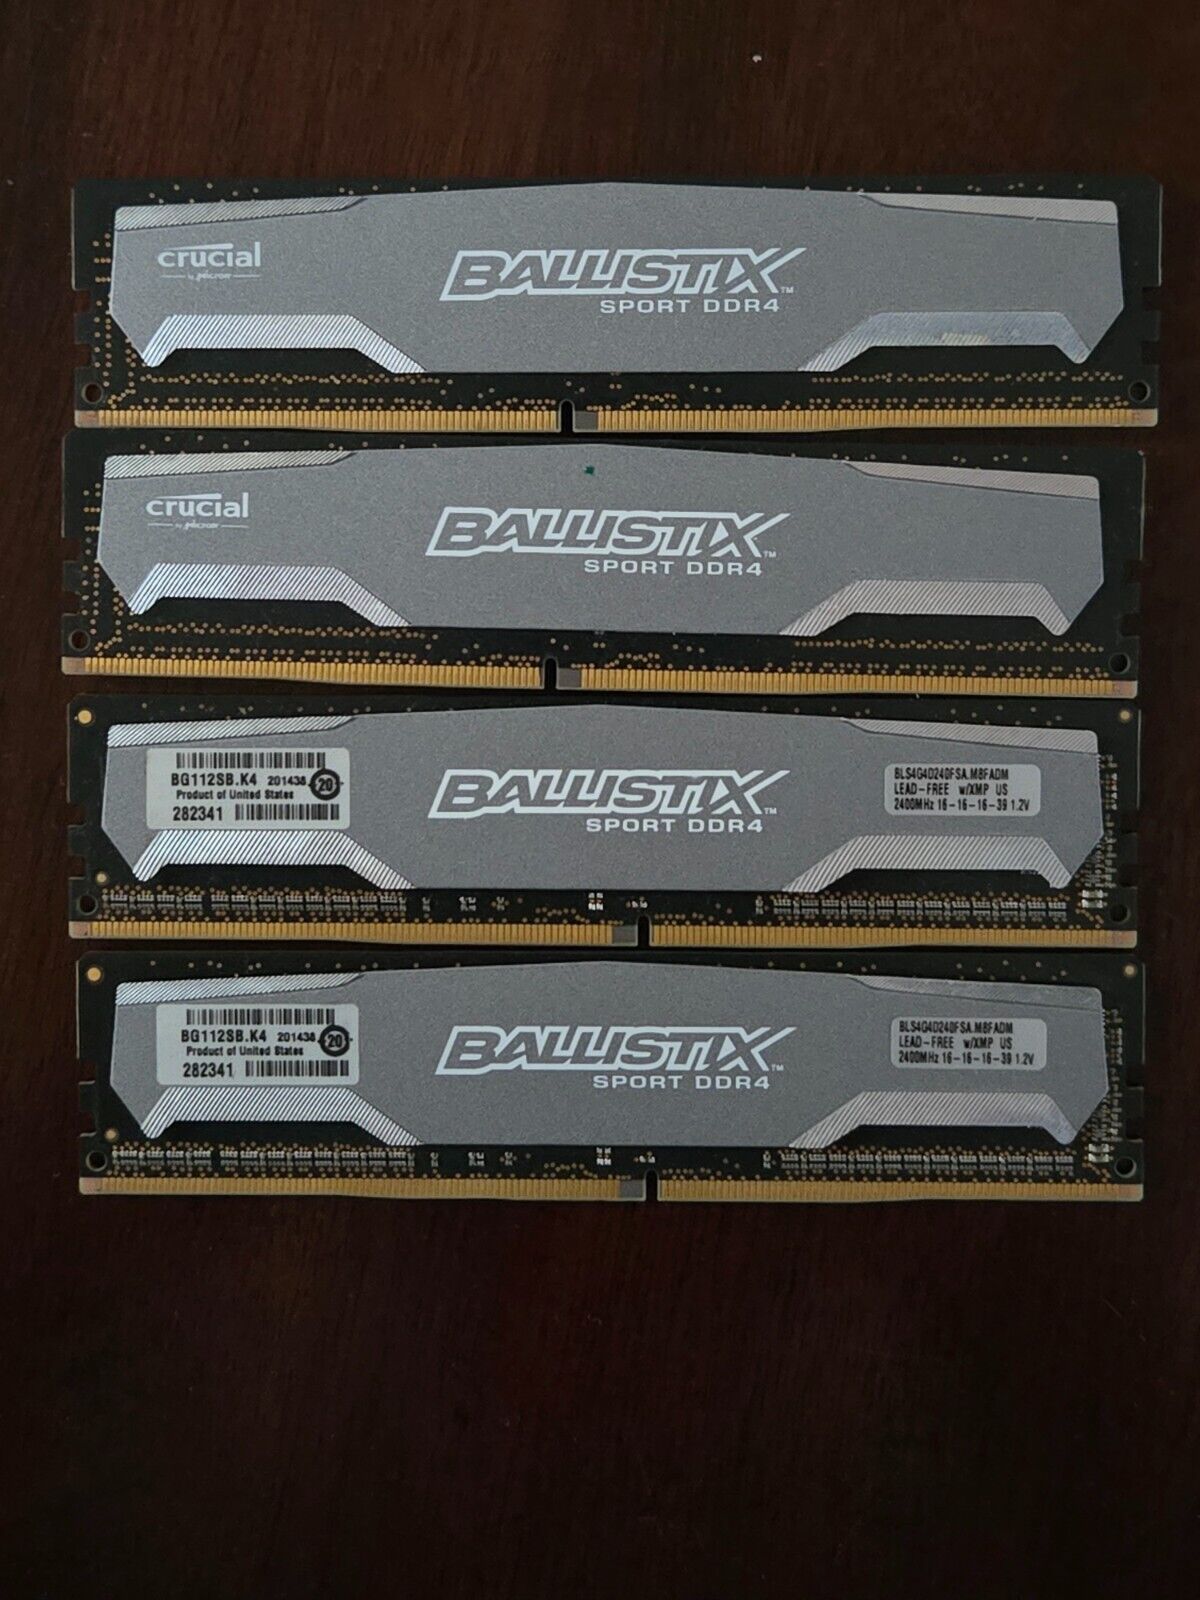 16GB Crucial Ballistix Sport DDR4 RAM Kit (4x4GB) - BLS4C4G4D240FSA M8FADM